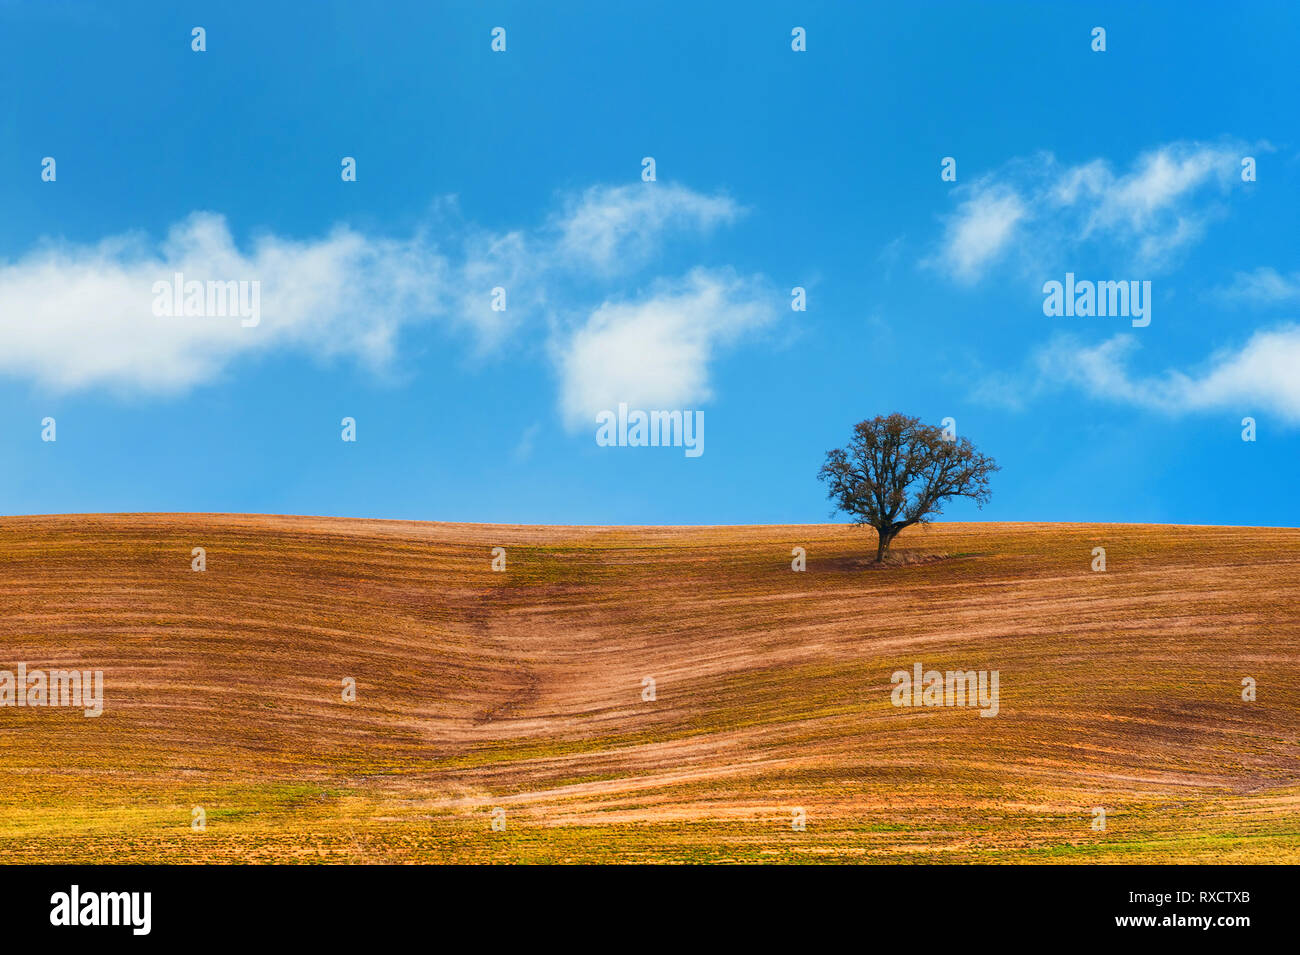 Wispy weißen Wolken schweben in blauer Himmel über ein landwirtschaftliches Gebiet auf einem Hügel, wo ein einsamer Baum steht. Stockfoto